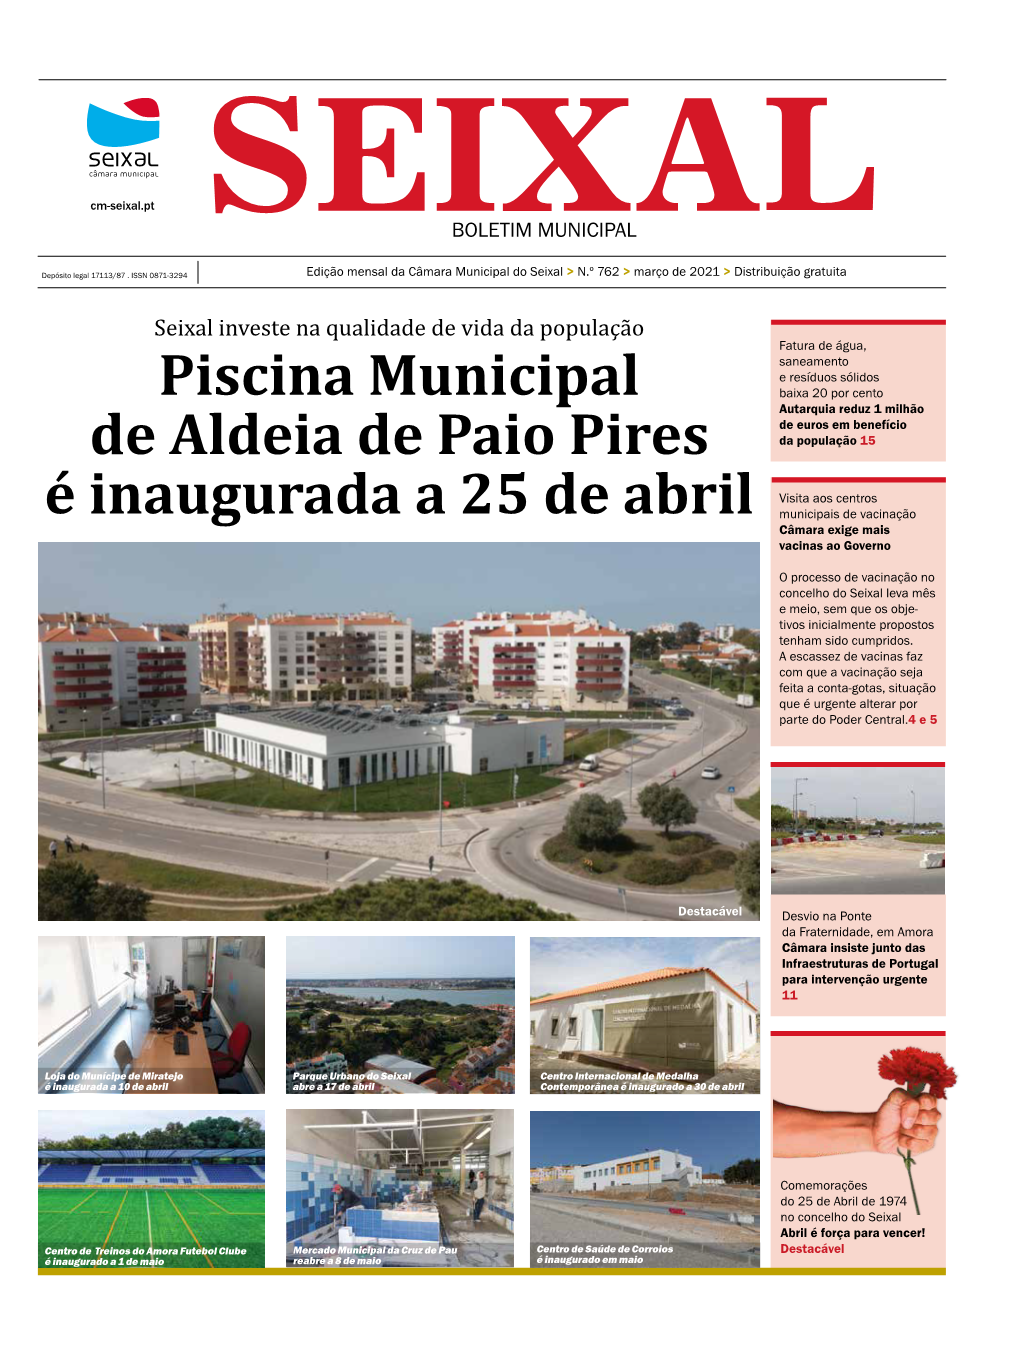 Piscina Municipal De Aldeia De Paio Pires É Inaugurada a 25 De Abril